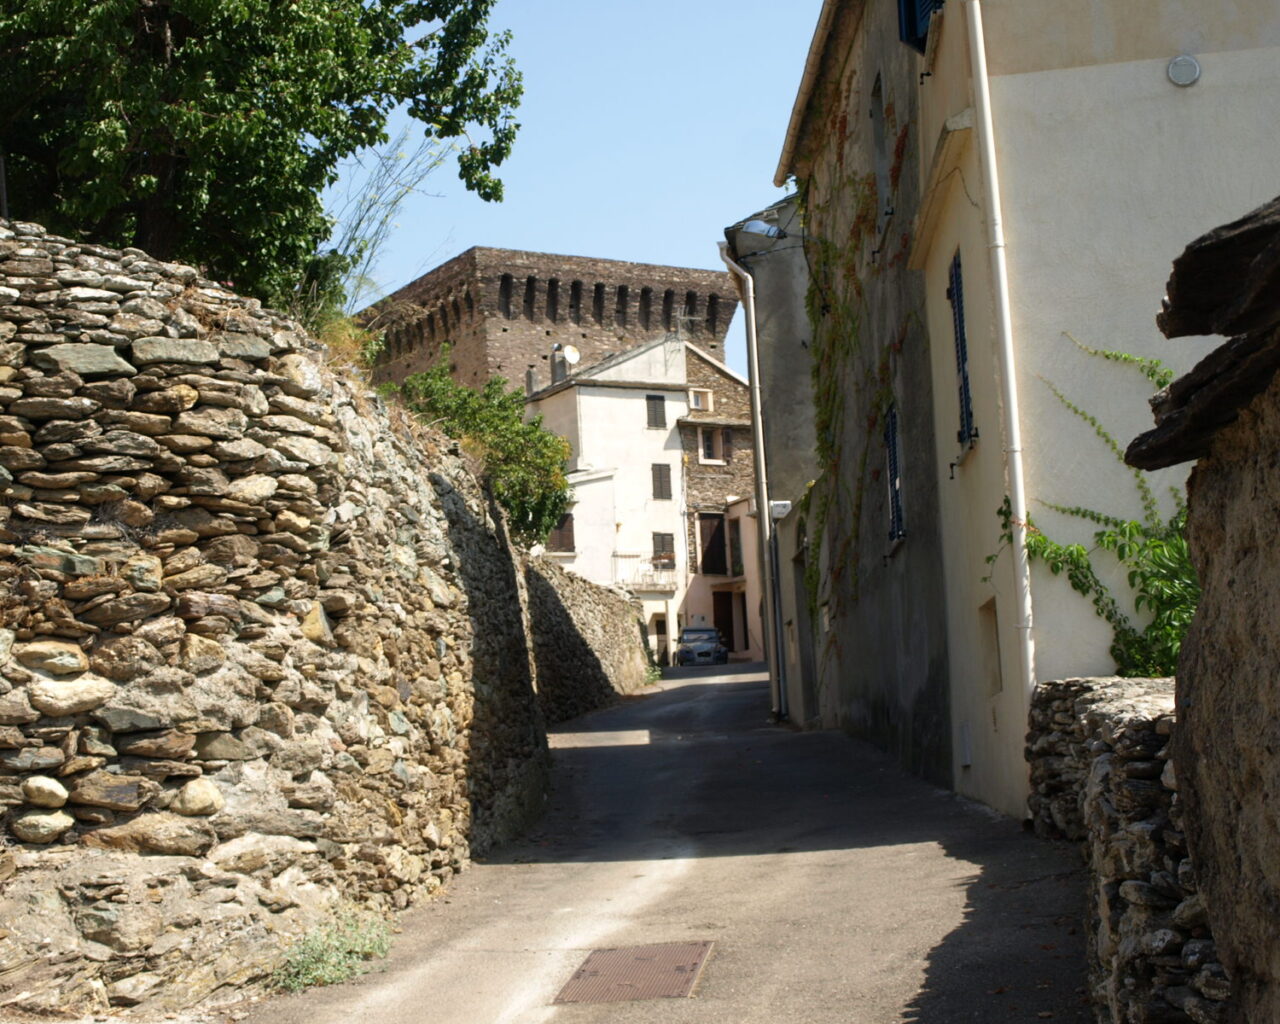 15 Le hameau dOrneto